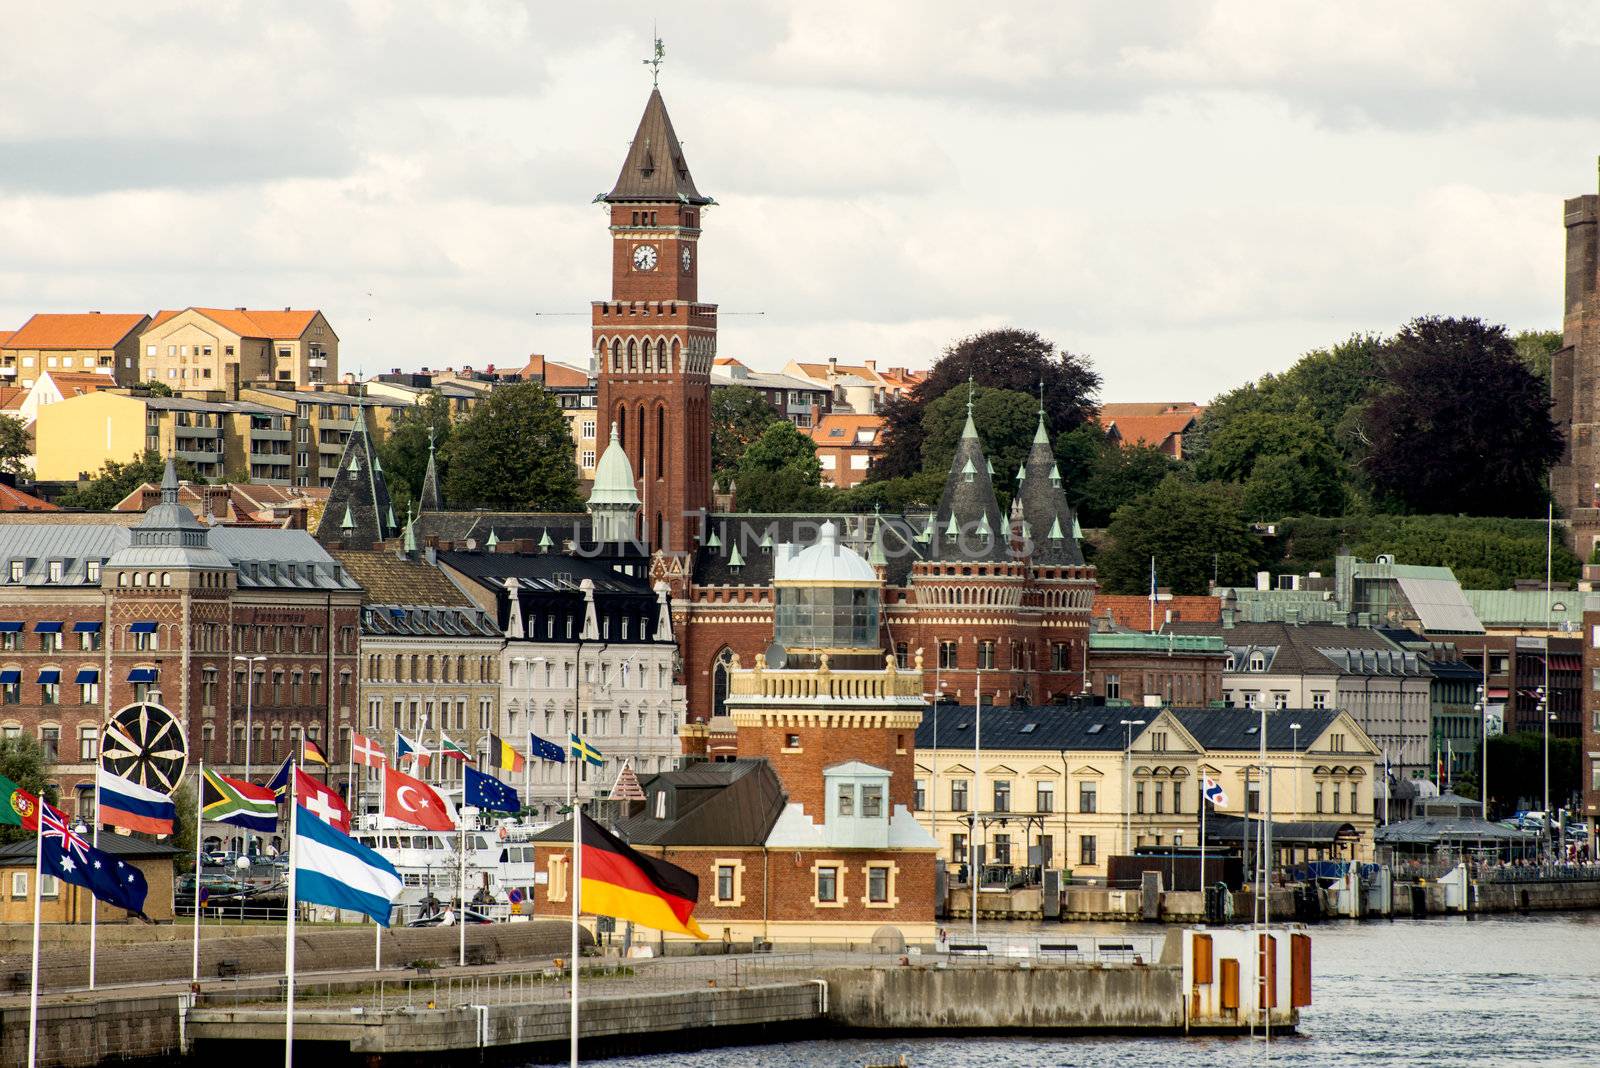 The view on Helsingborg harbor, Sweden. Taken on August 2012.